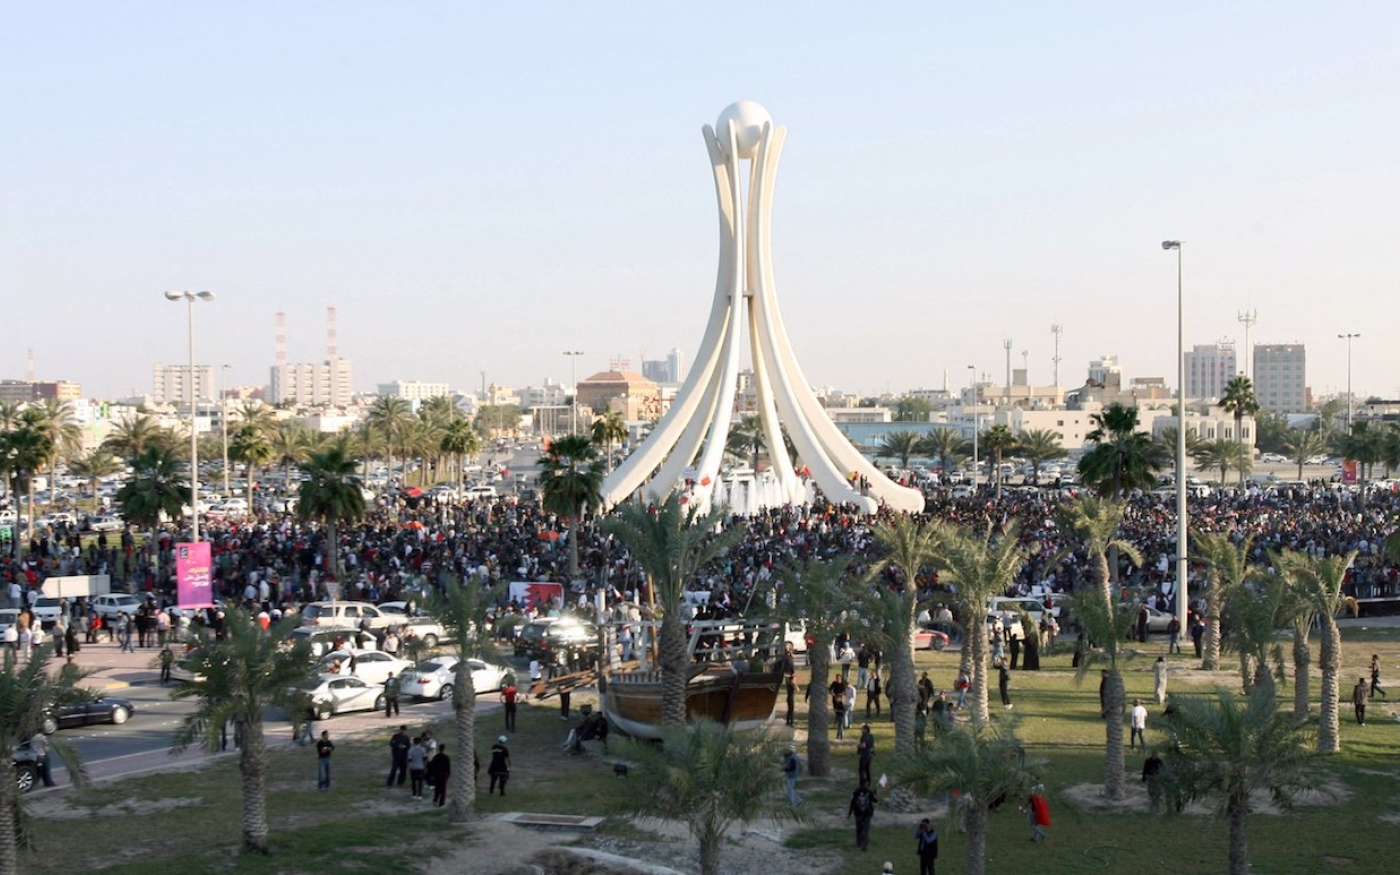 Des milliers de manifestants anti-gouvernementaux se rassemblent sur le rond-point de la Perle dans la capitale bahreïnie Manama, le 15 février 2011 (AFP)